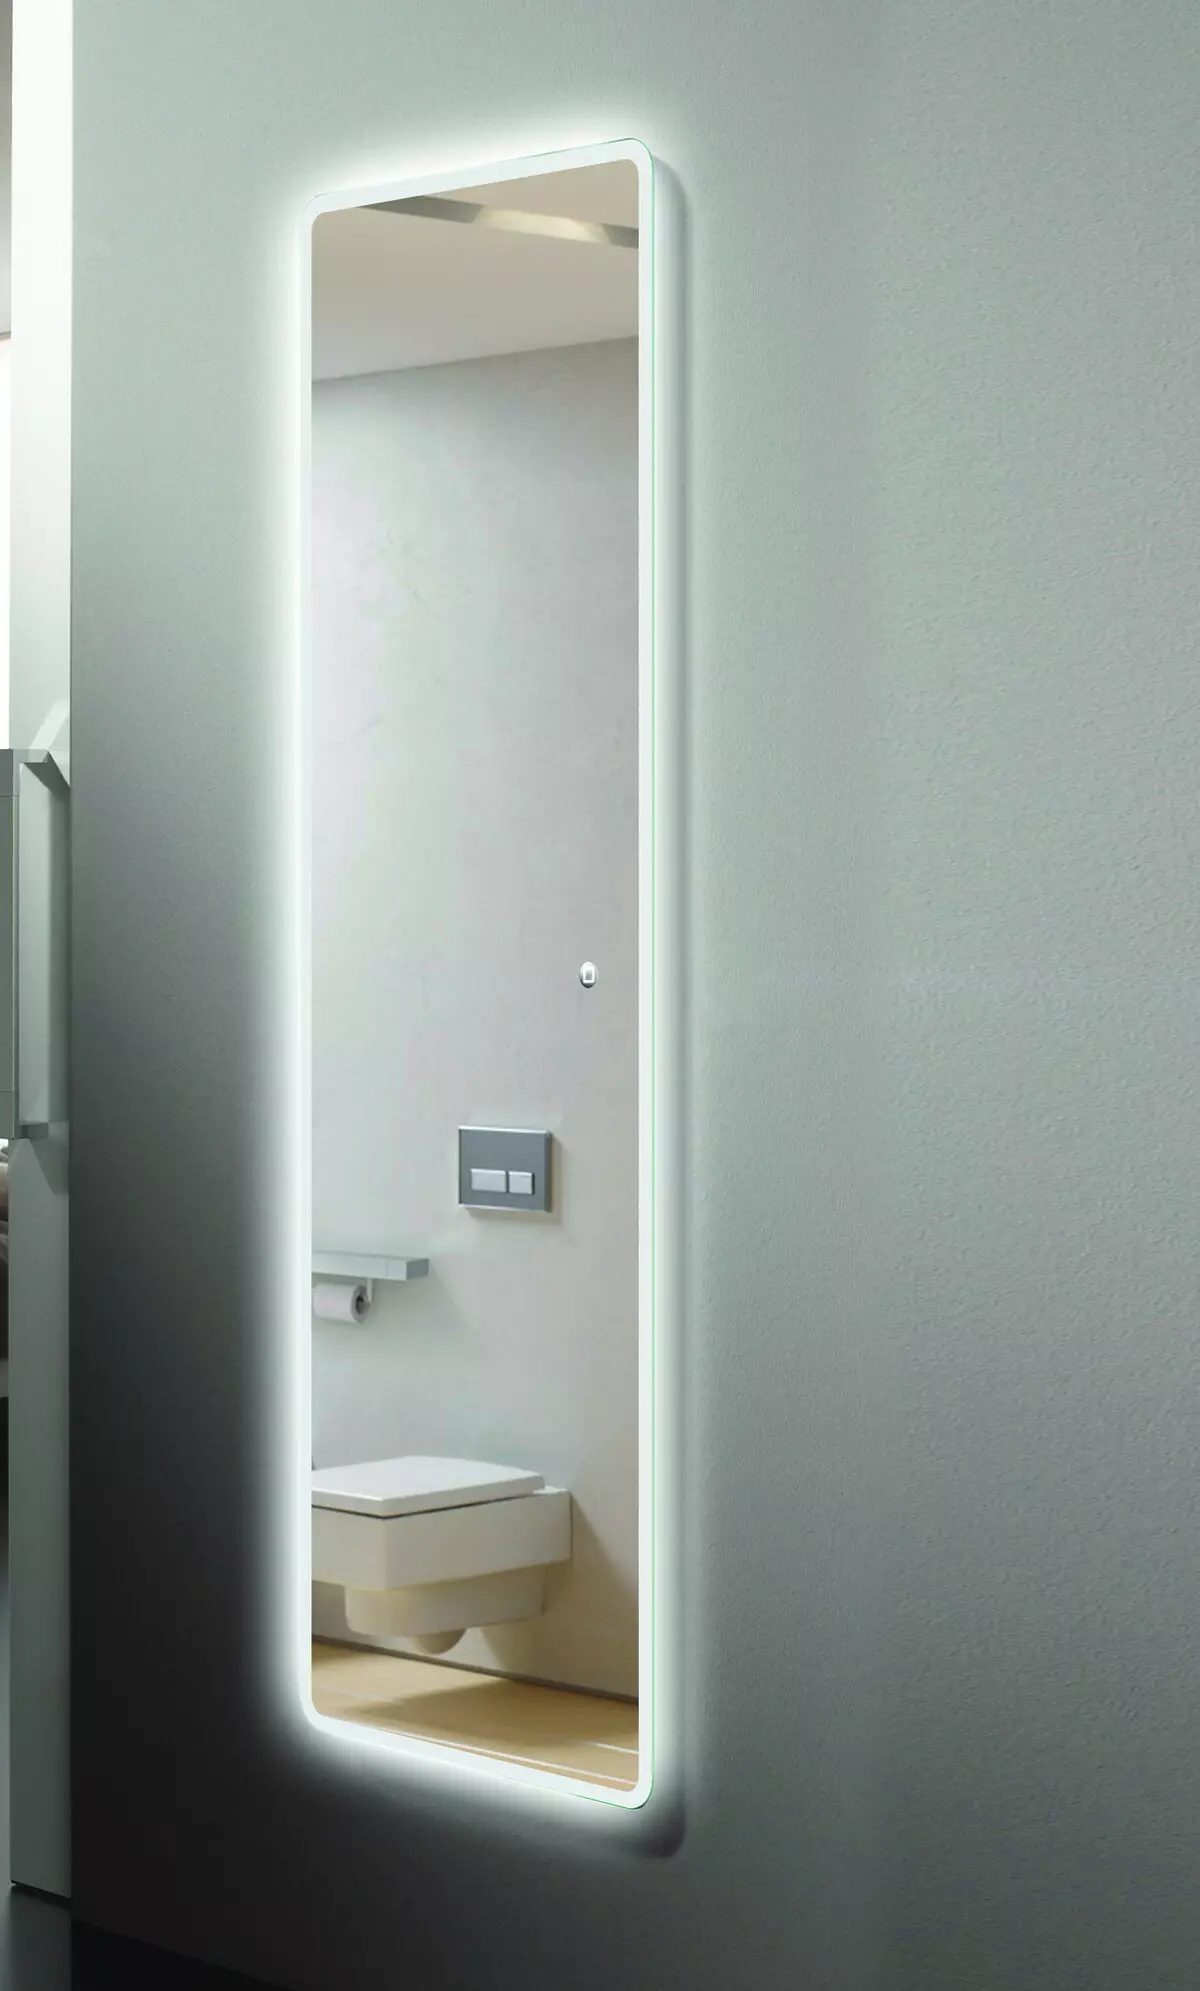 กระจกอุ่นในห้องน้ำ: วิธีการเลือกกระจกที่มีไฟส่องสว่าง, นาฬิกาและต่อต้านธรรมดาในห้องน้ำหรือไม่? คุณสมบัติของกระจกร้อน 10072_6